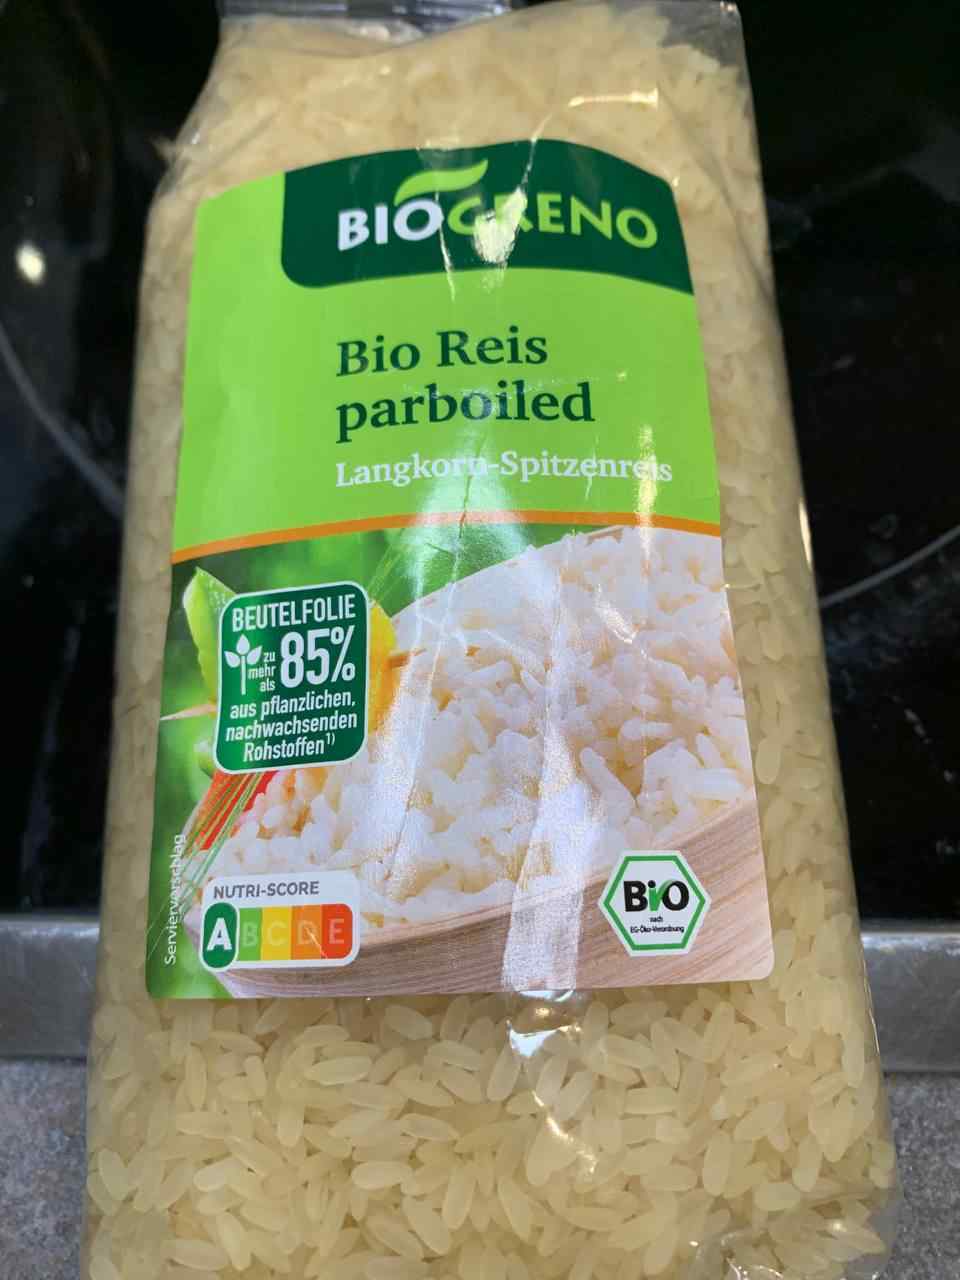 Parboiled Bio Reis